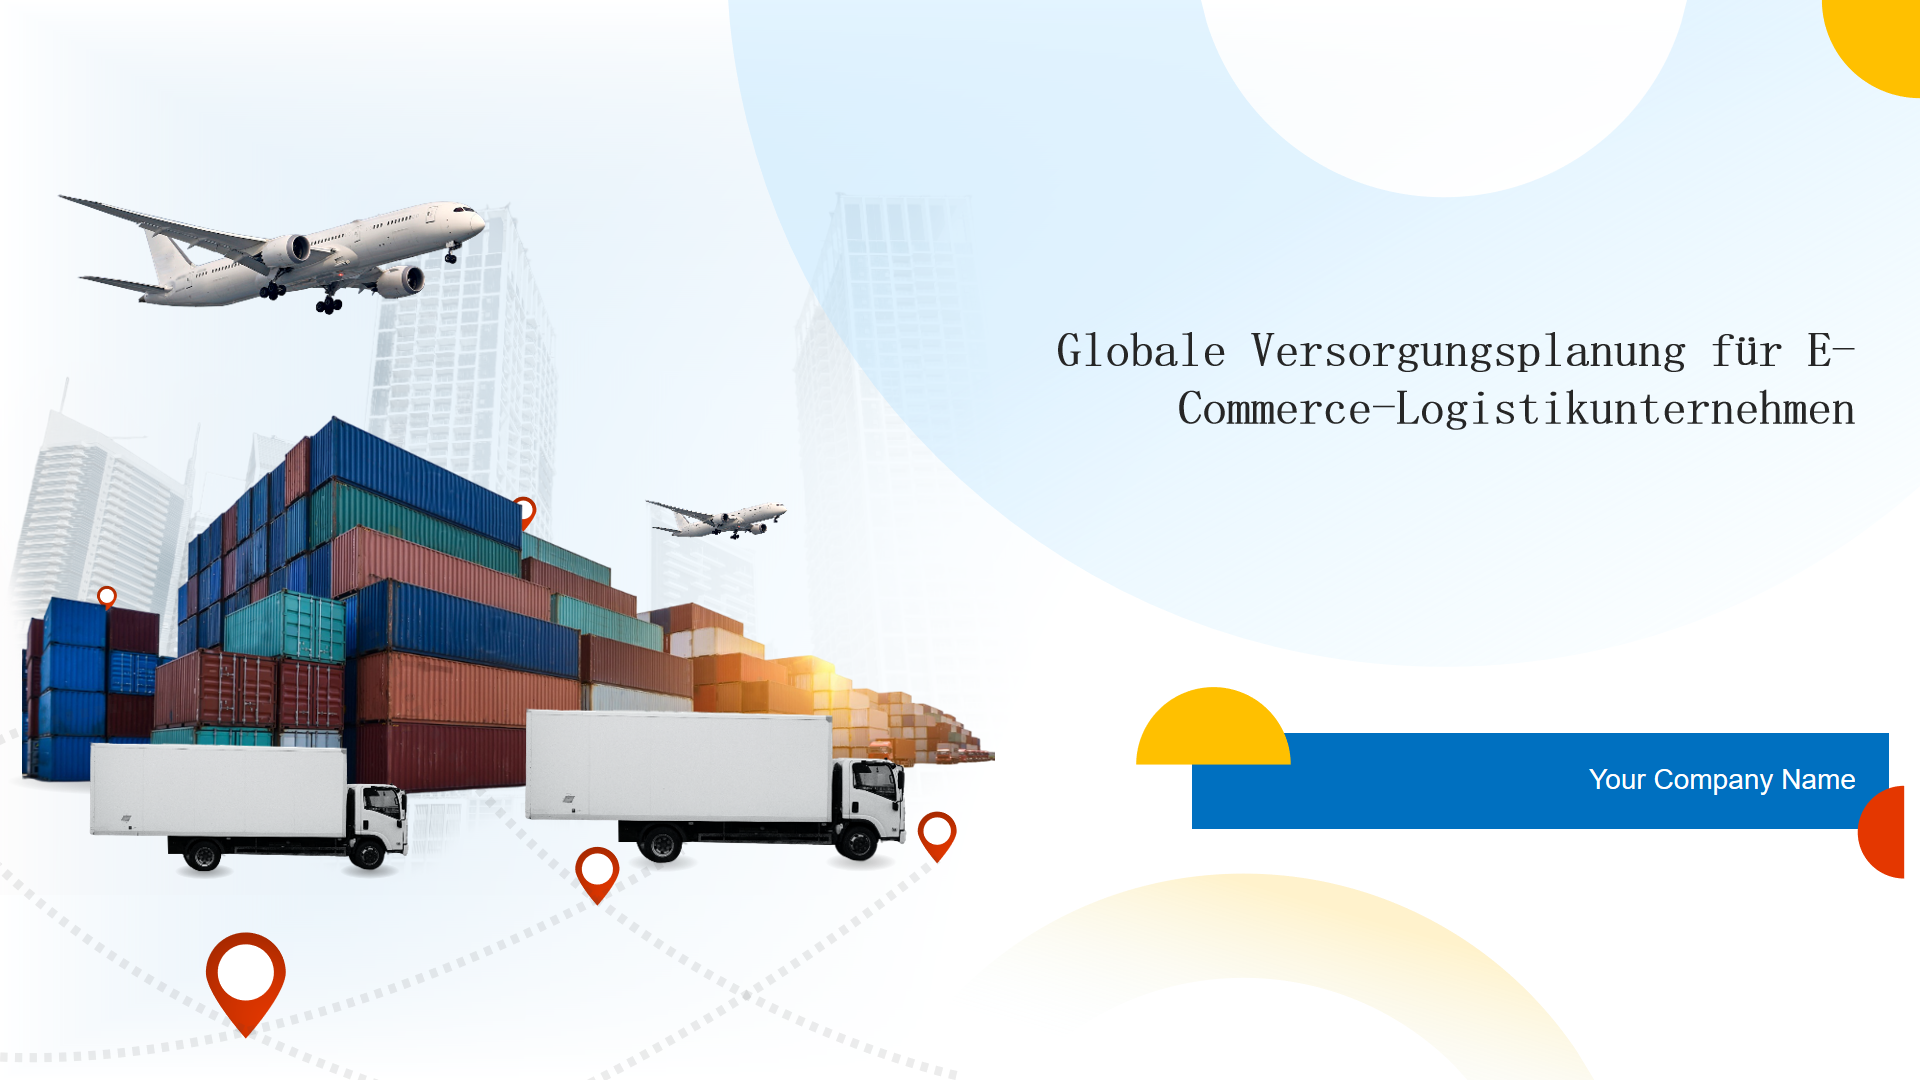 Globale Versorgungsplanung für E-Commerce-Logistikunternehmen